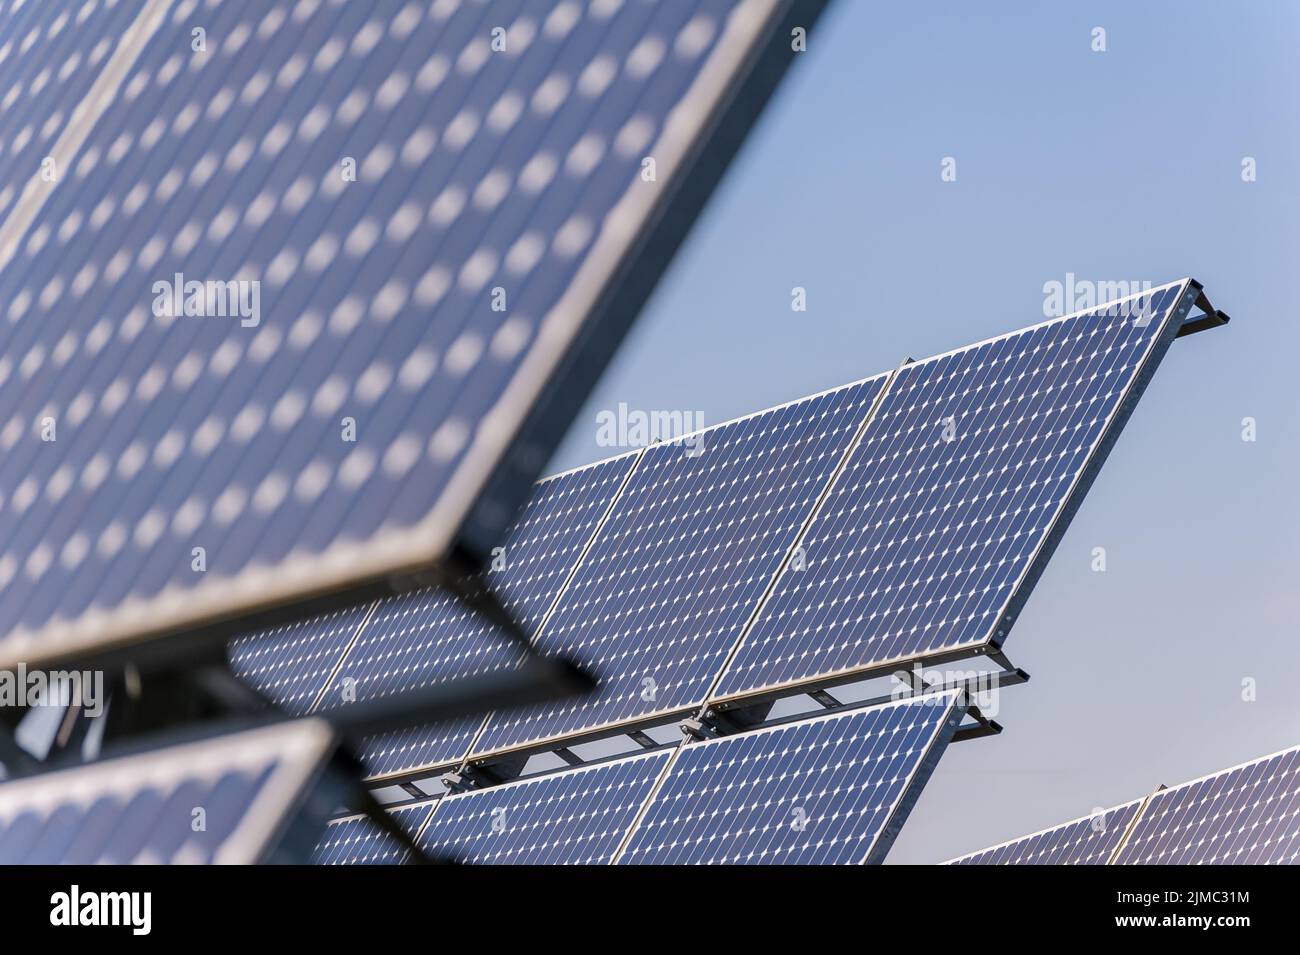 Paneles solares para producir energía de forma respetuosa con el medio ambiente Foto de stock